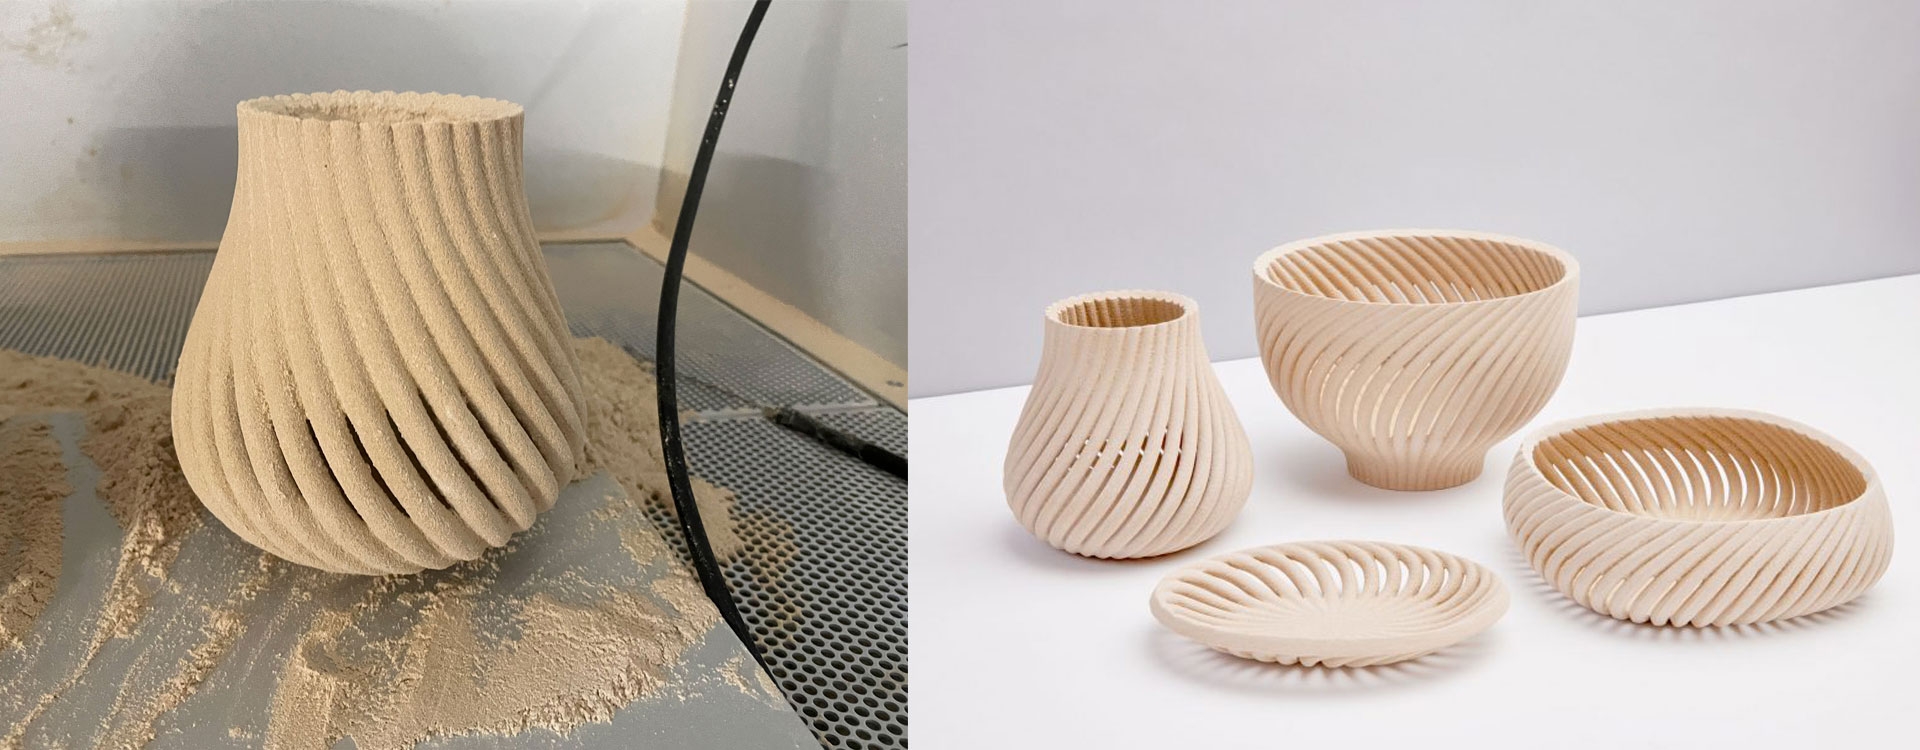 Ив Бехар изготовил предметы домашнего обихода из переработанных древесных отходов с помощью 3D-печати.